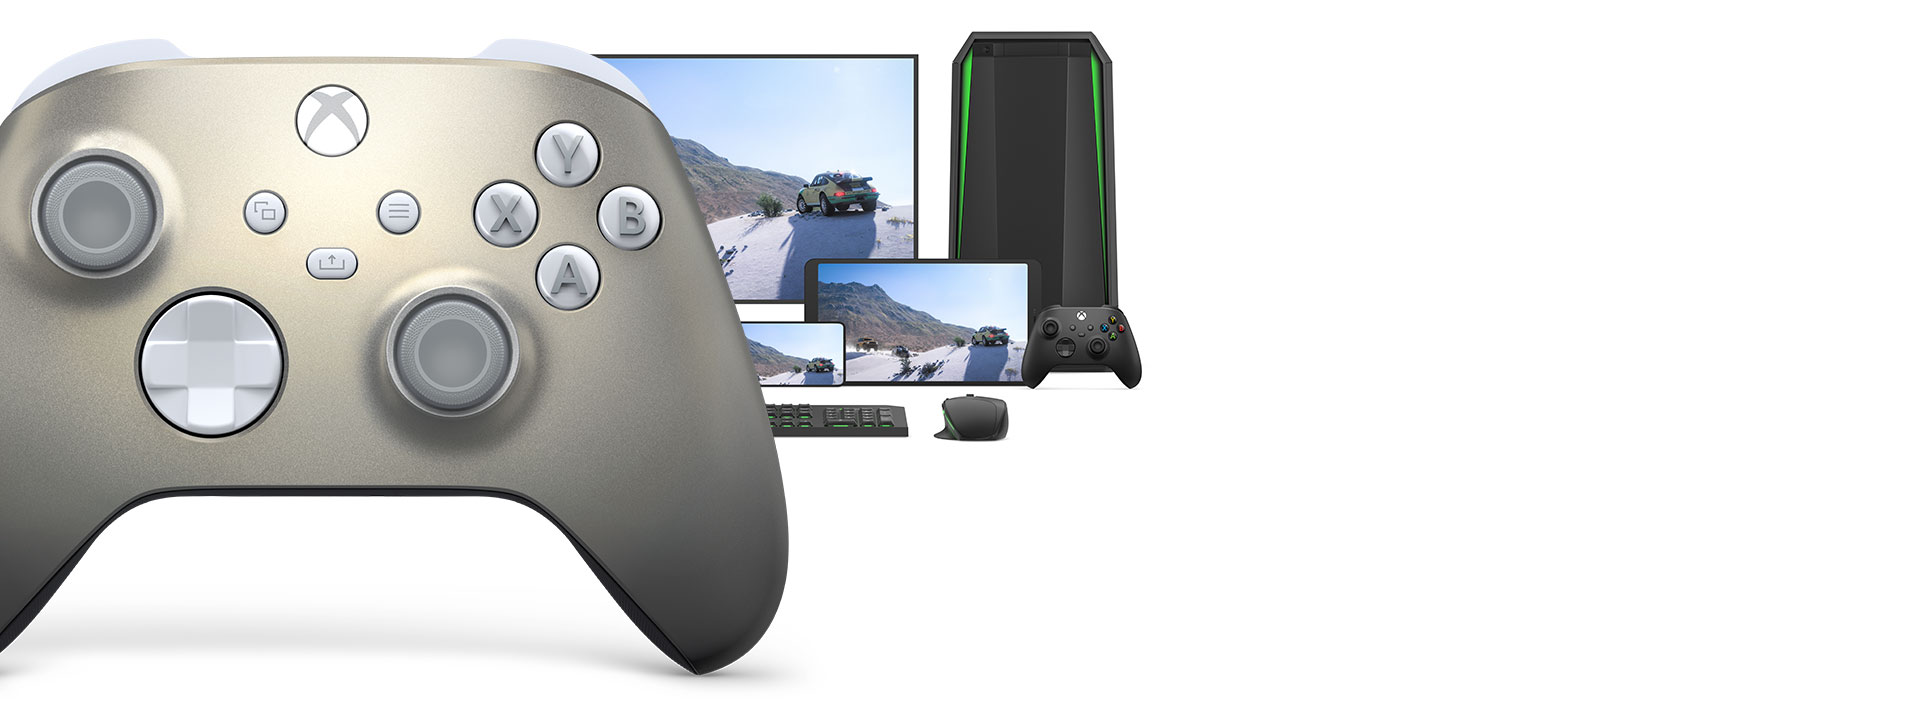 Xbox trådlös handkontroll – Lunar Shift Special Edition med en dator, en TV och en Xbox Series S